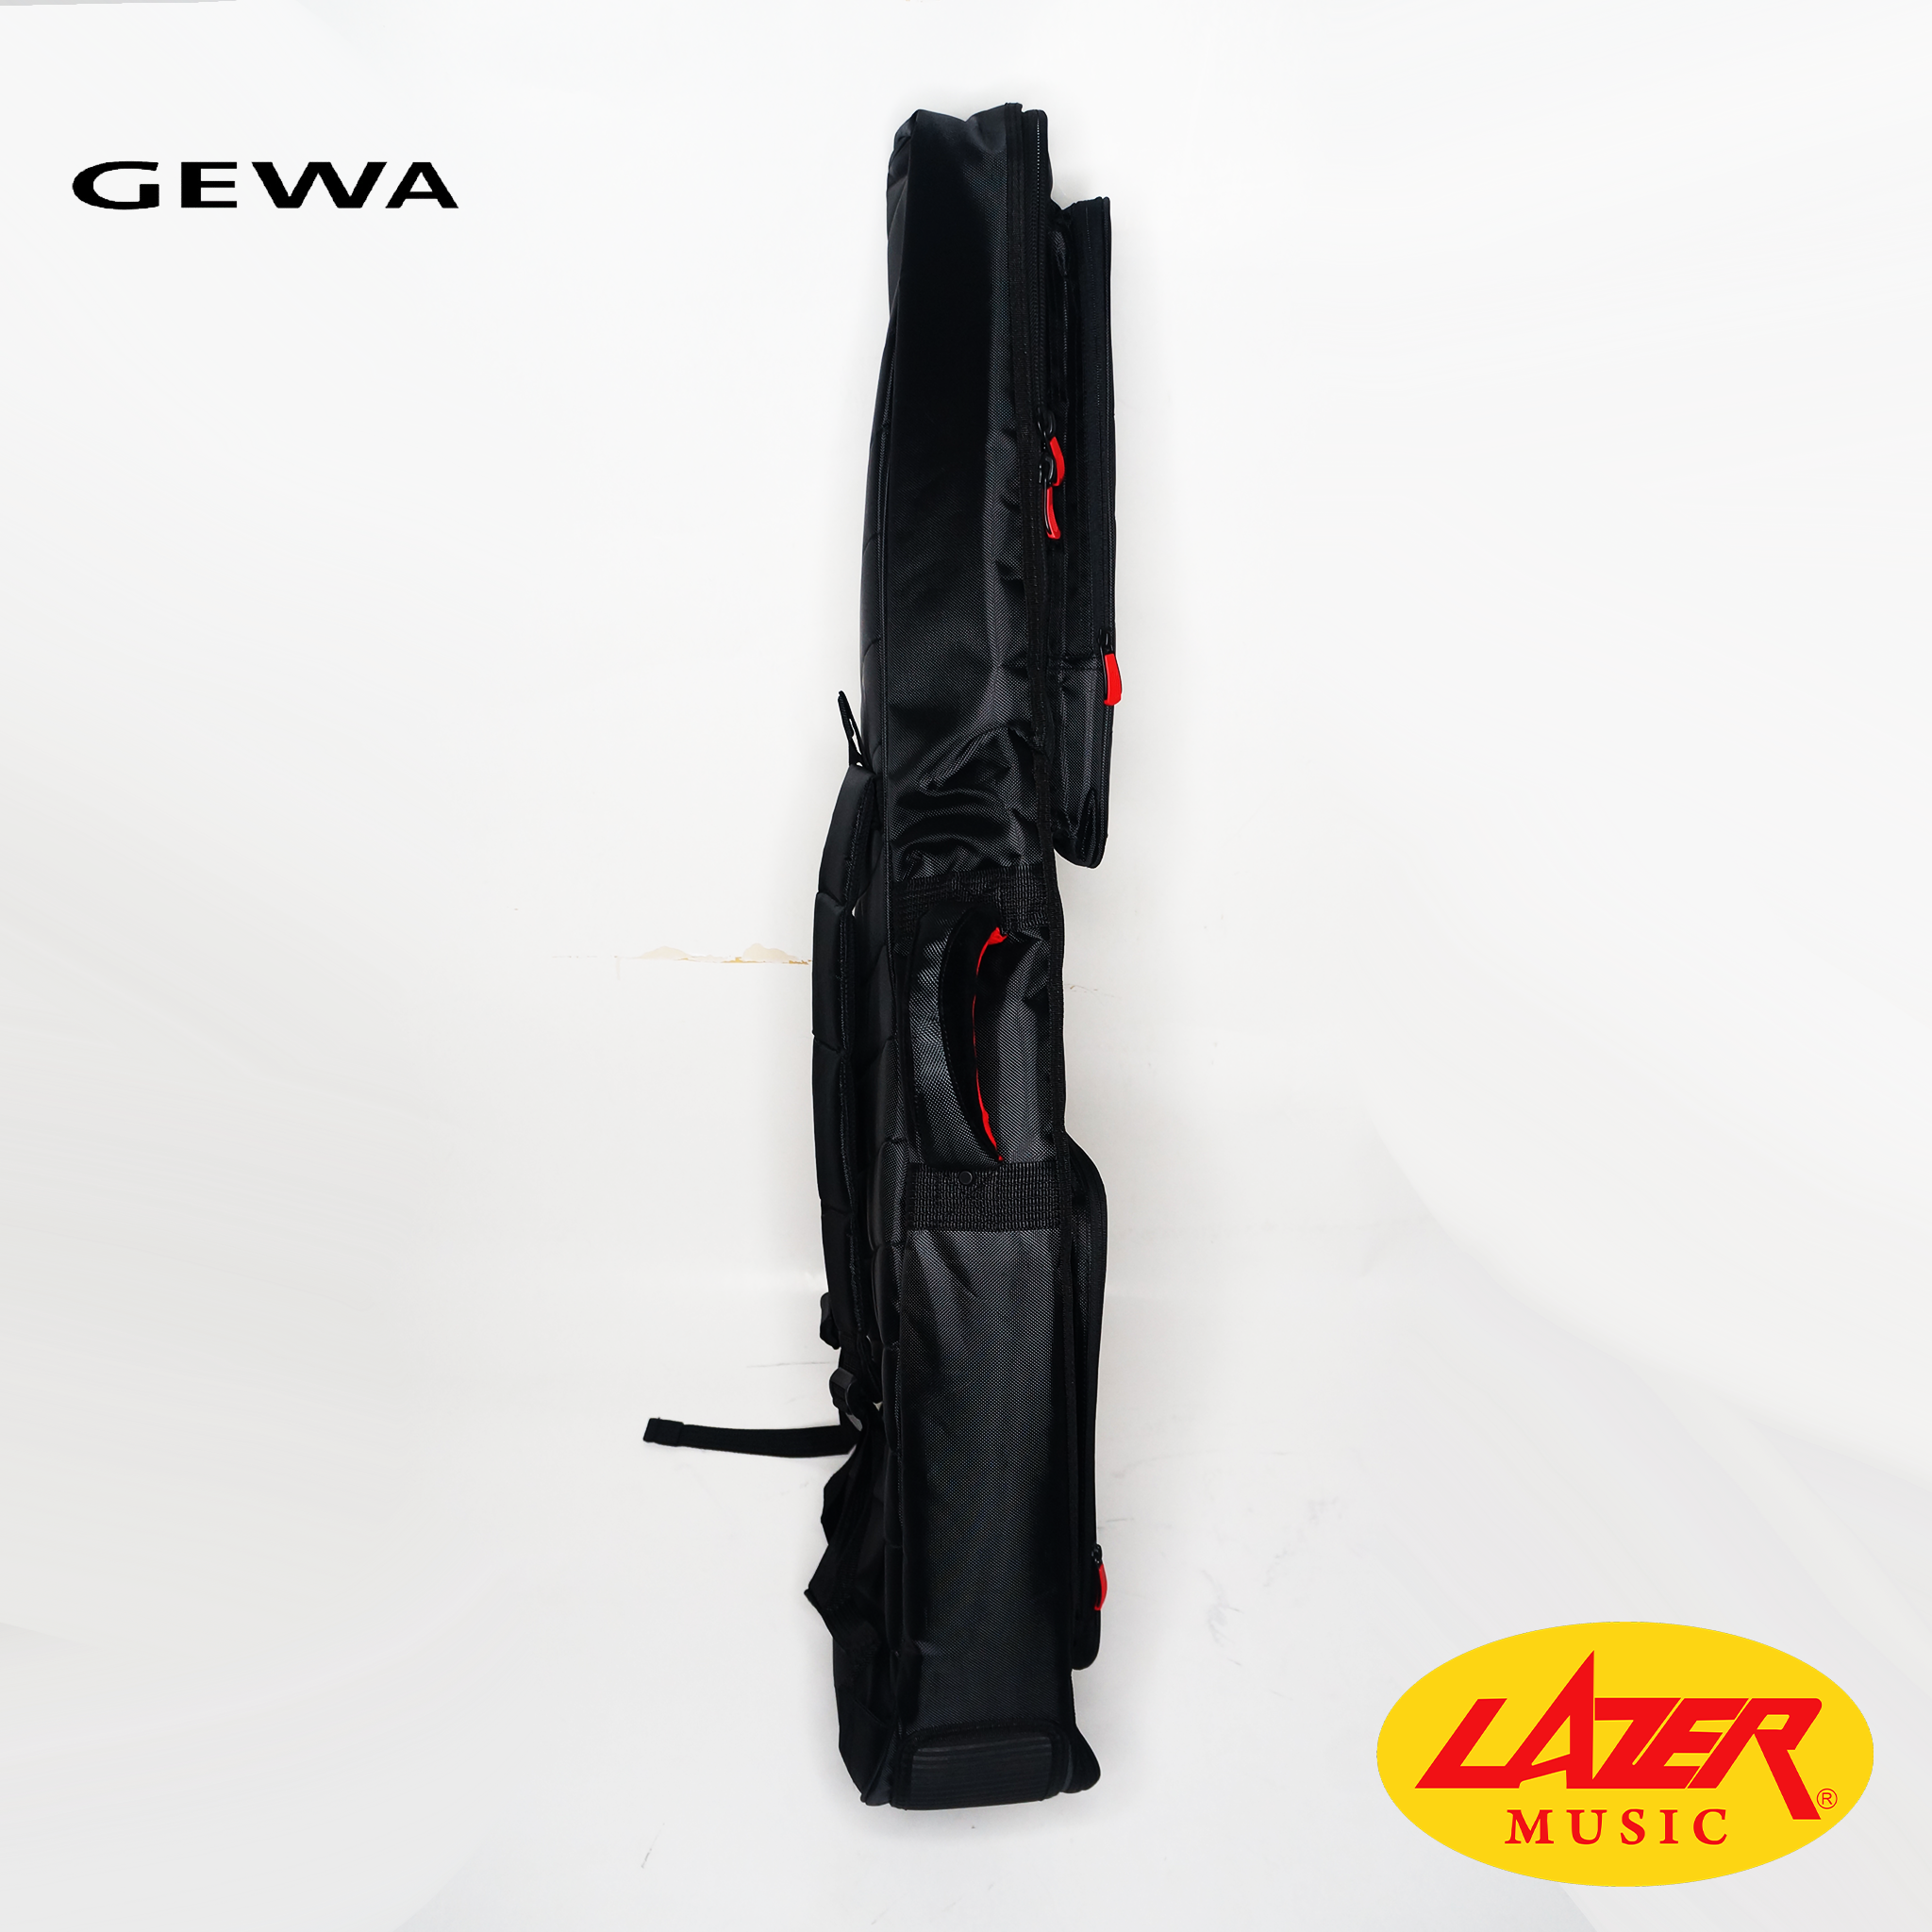 Lazer GEWA-30-C Padded Guitar Case (Classical)